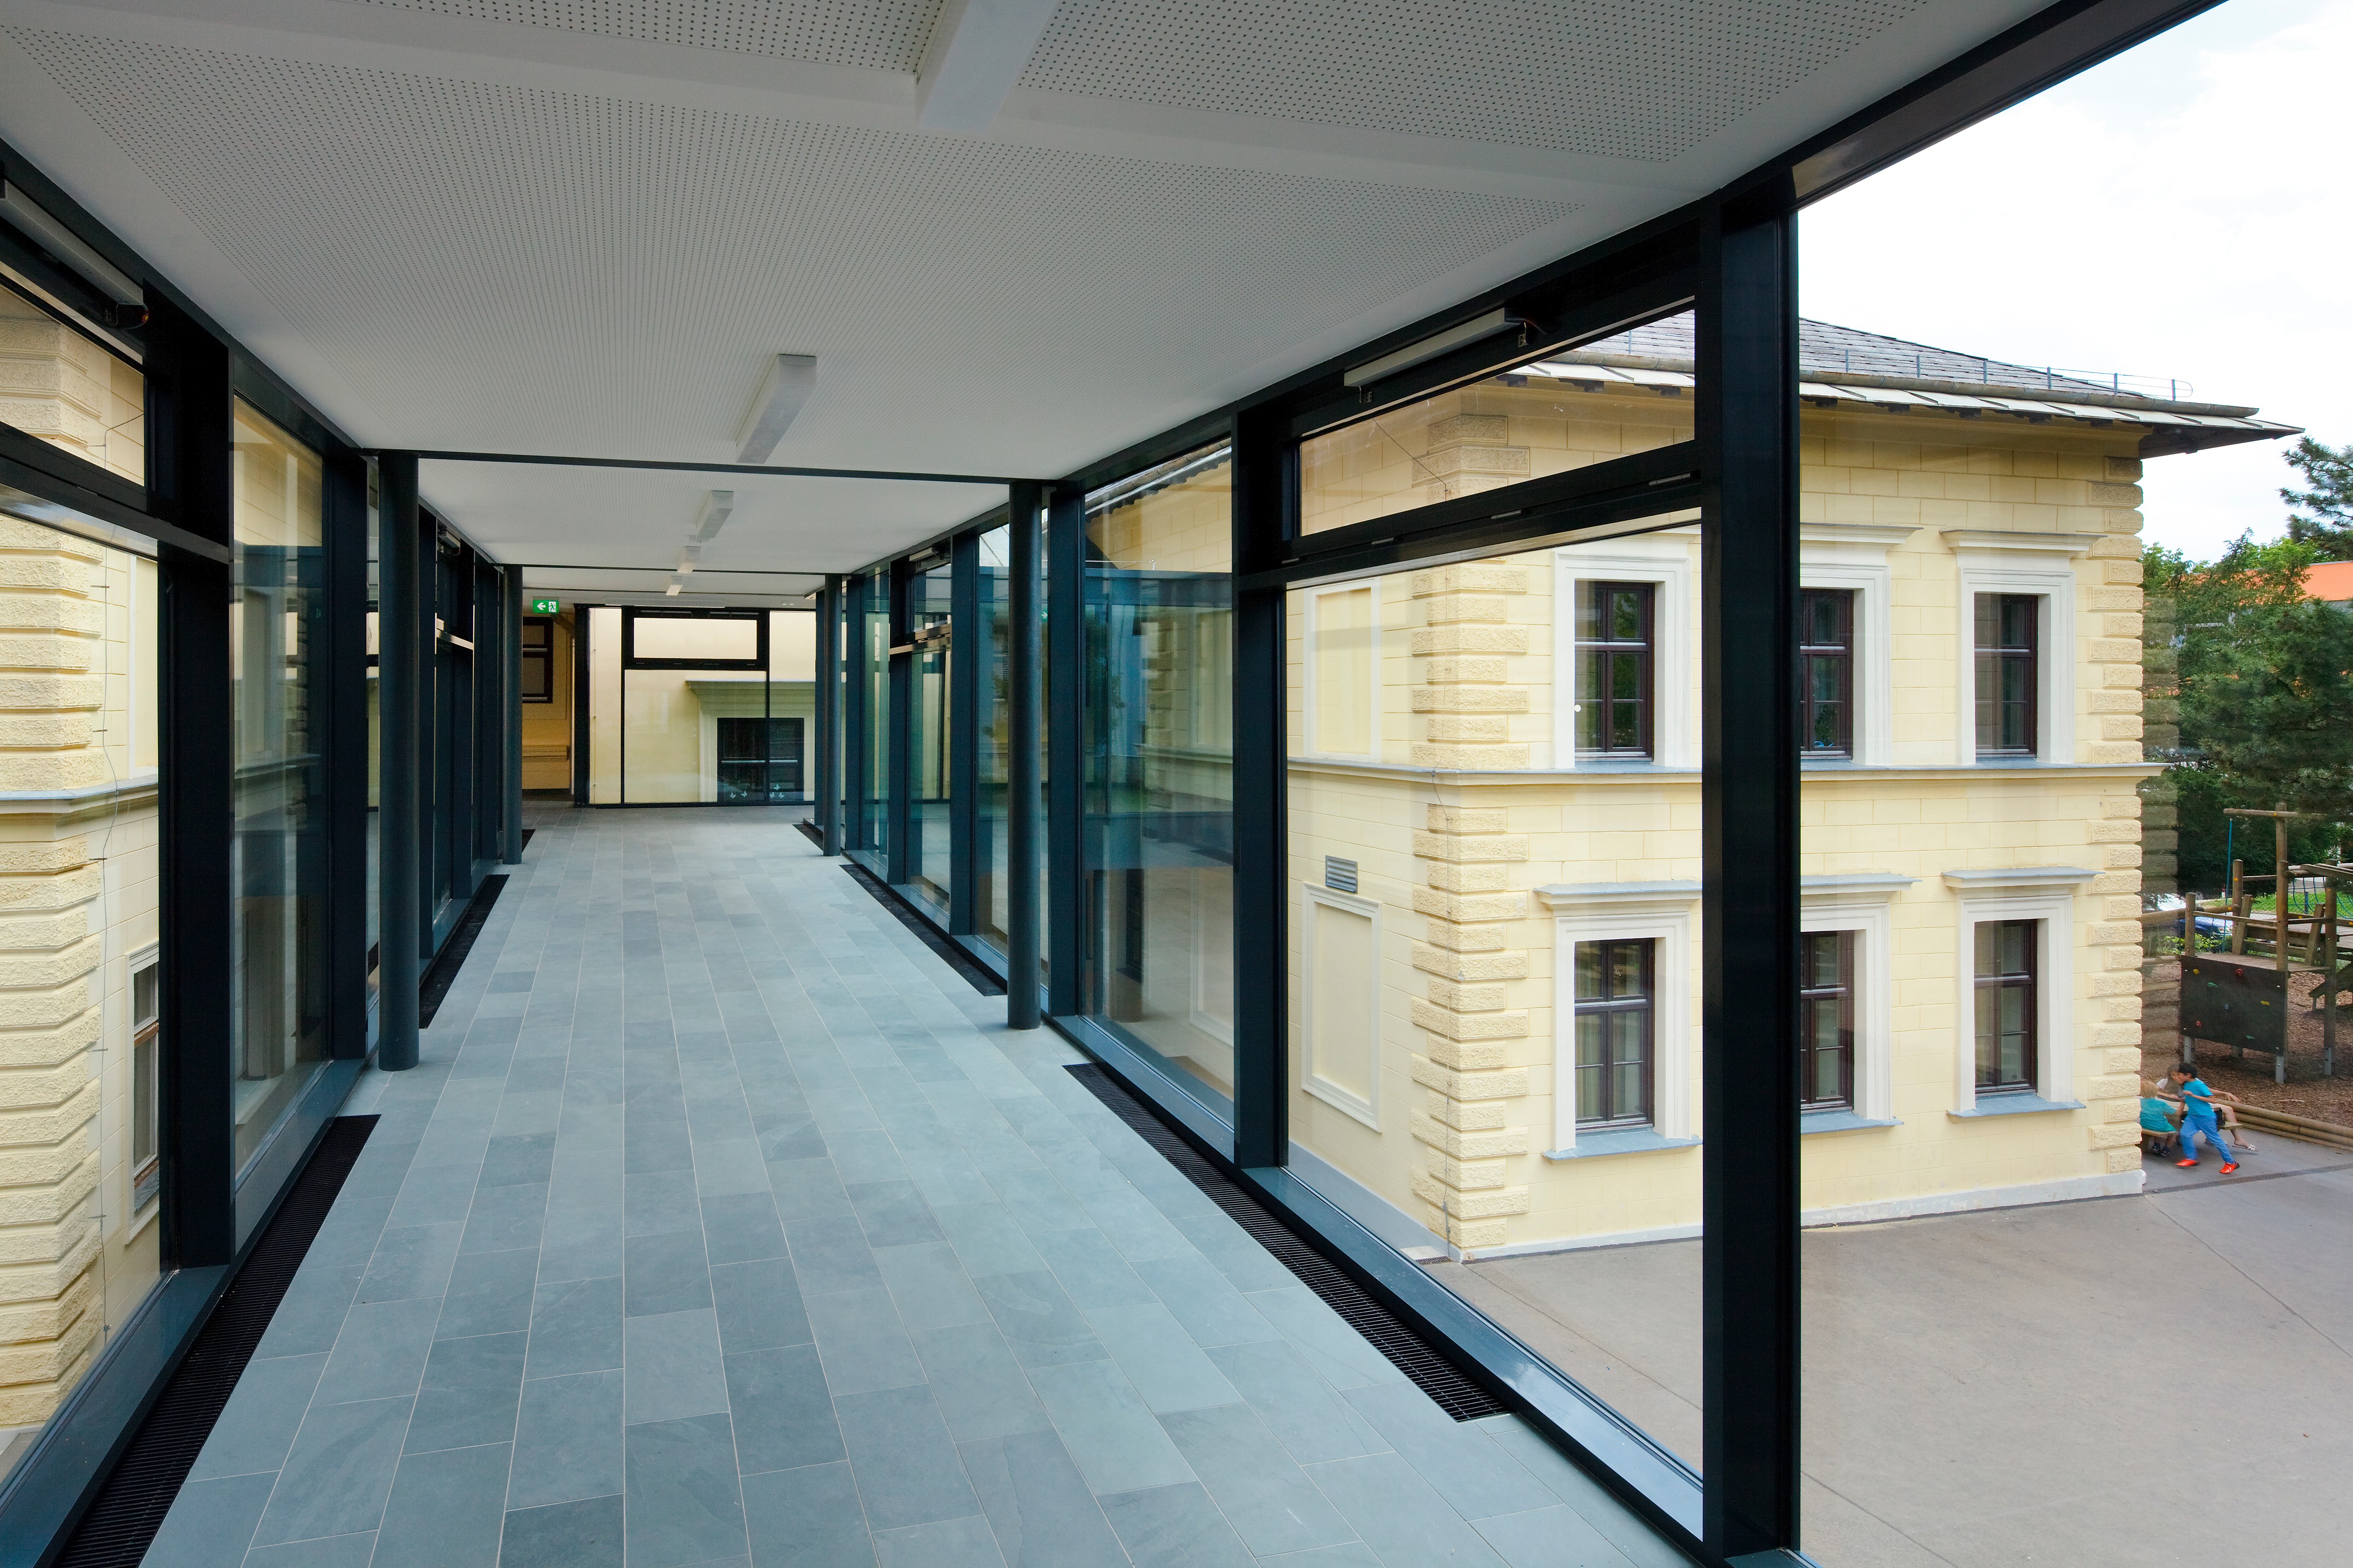 <p>© RUNSER / PRANTL architekten, Volksschule Mannagettagasse, 1190 Wien, Österreich, 2013, Schule, Fotograf Rupert Steiner</p>